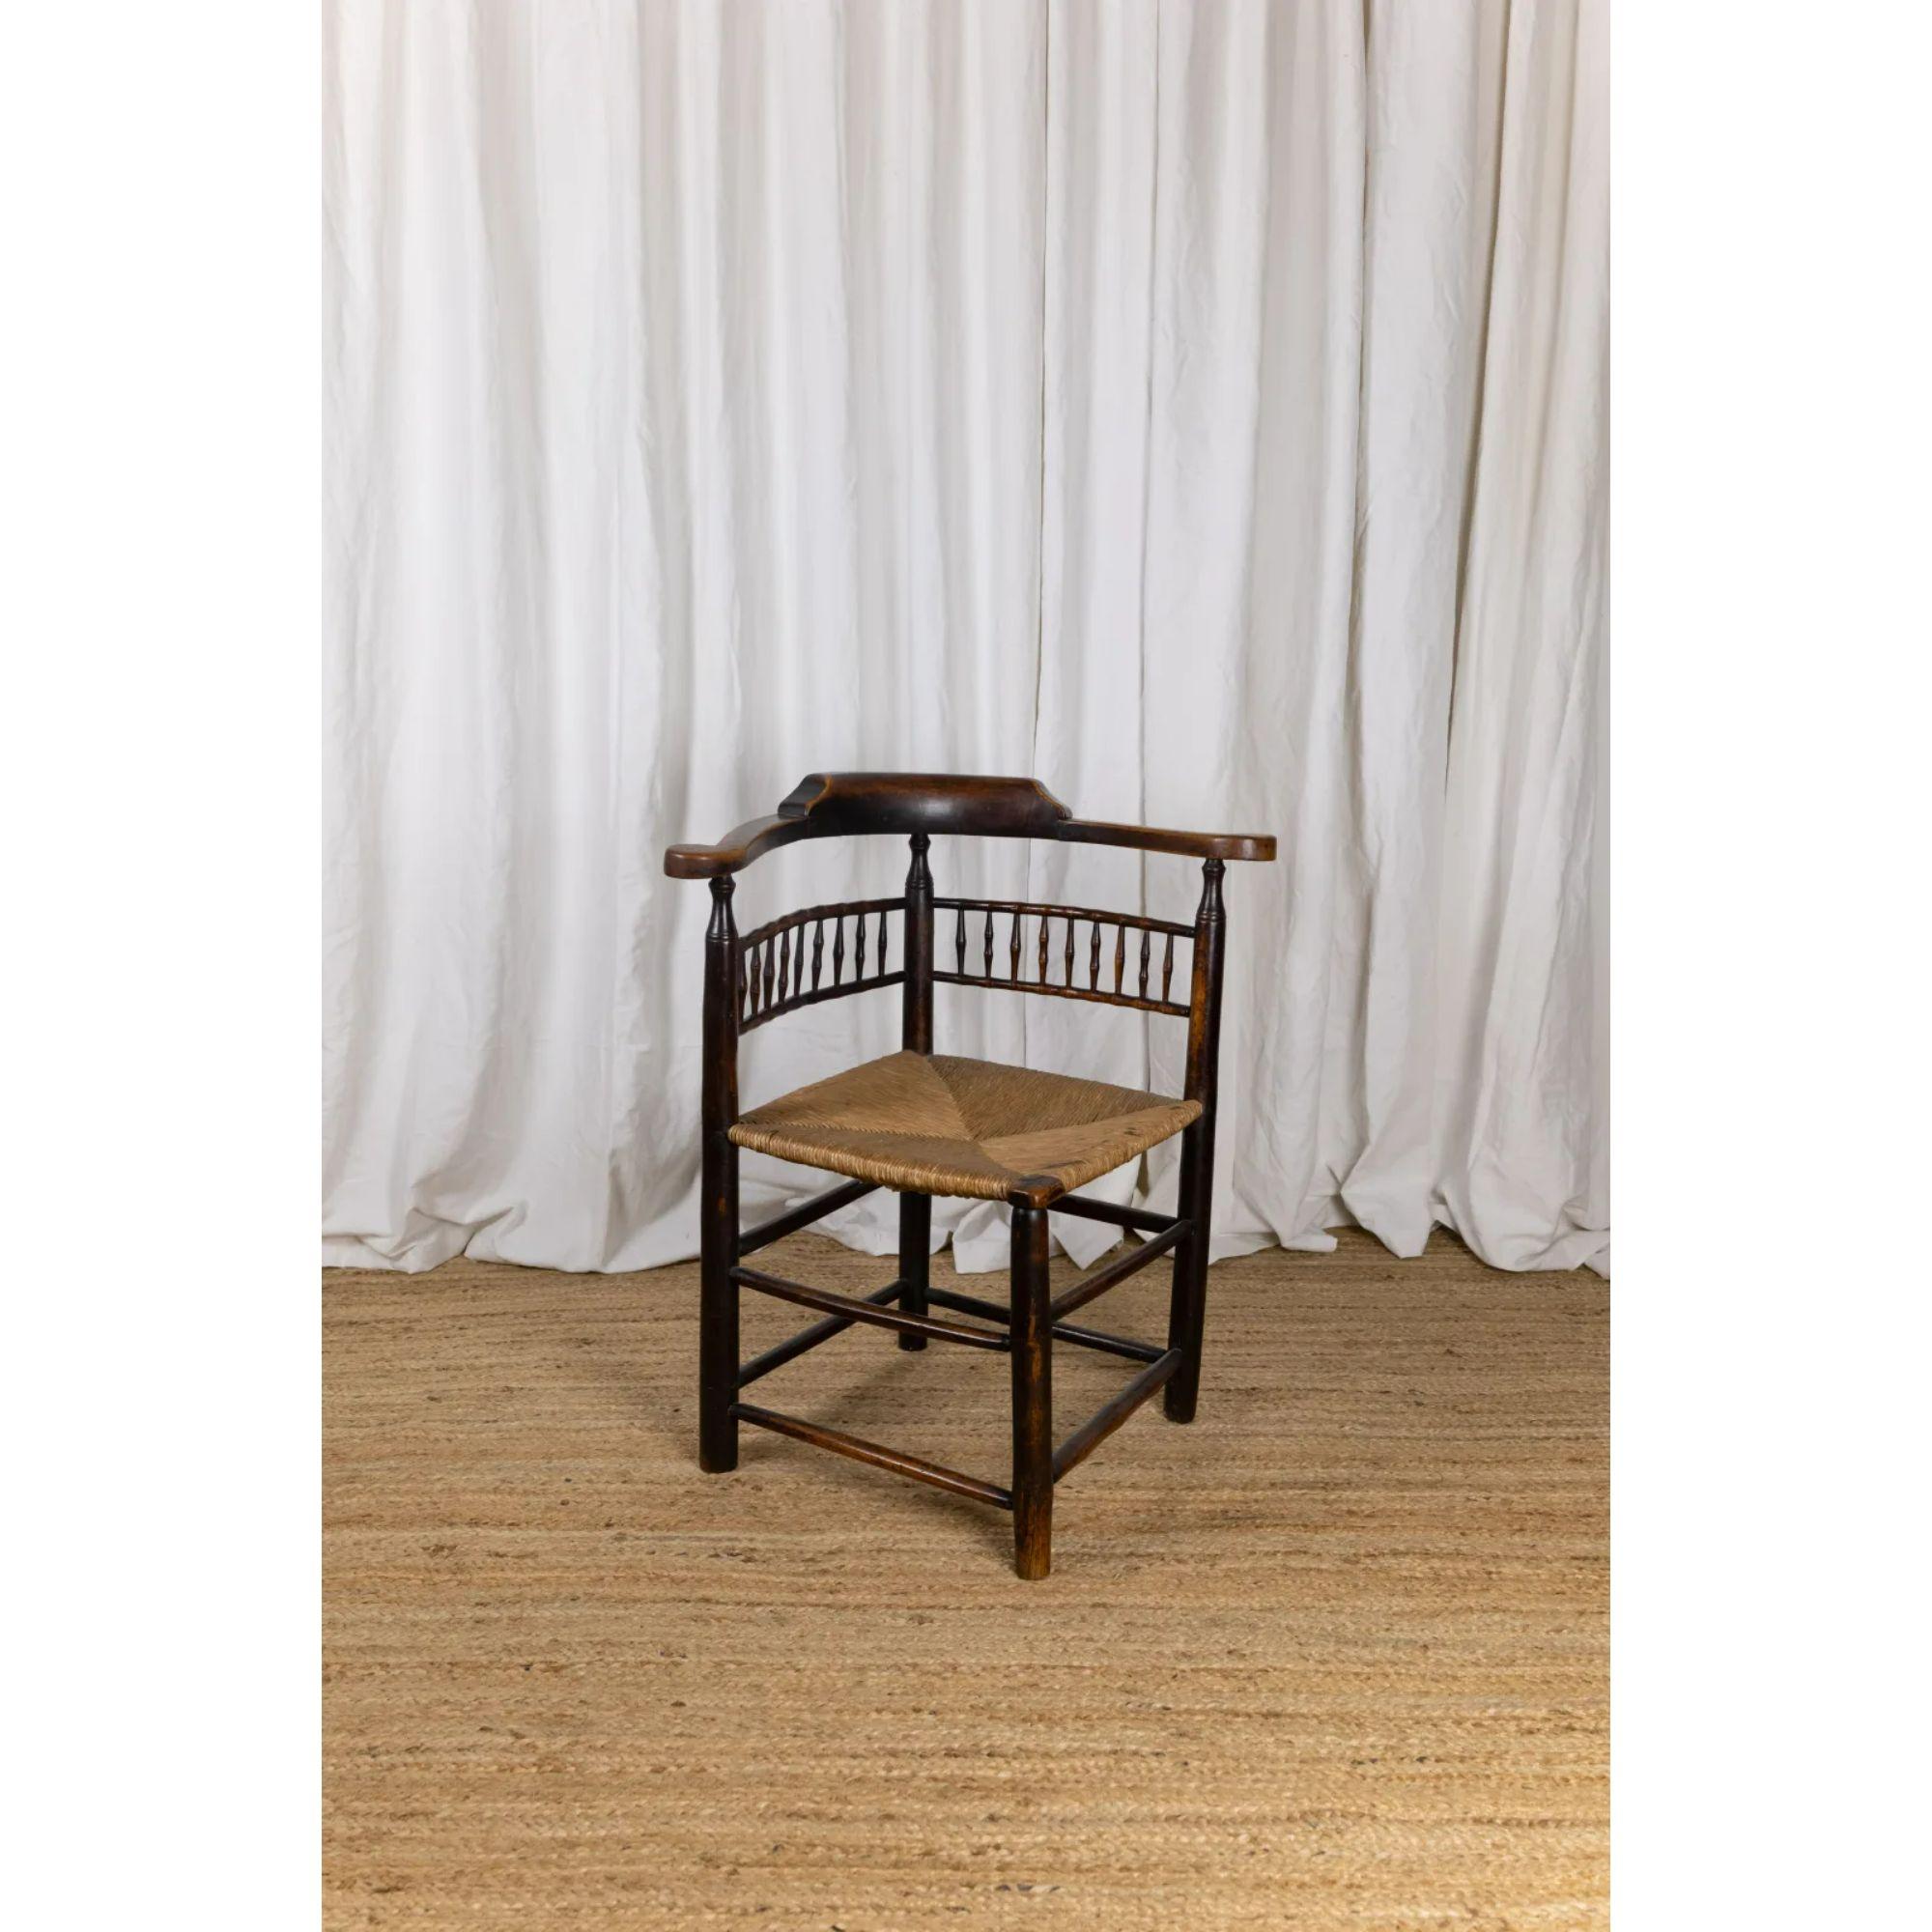 Chaise d'angle anglaise en orme, début du 19ème siècle

Une chaise d'angle du début du 19ème siècle en orme avec un siège en jonc et un détail inhabituel en simili bambou dans le dossier.

Un bel exemple d'une chaise de campagne entièrement faite à